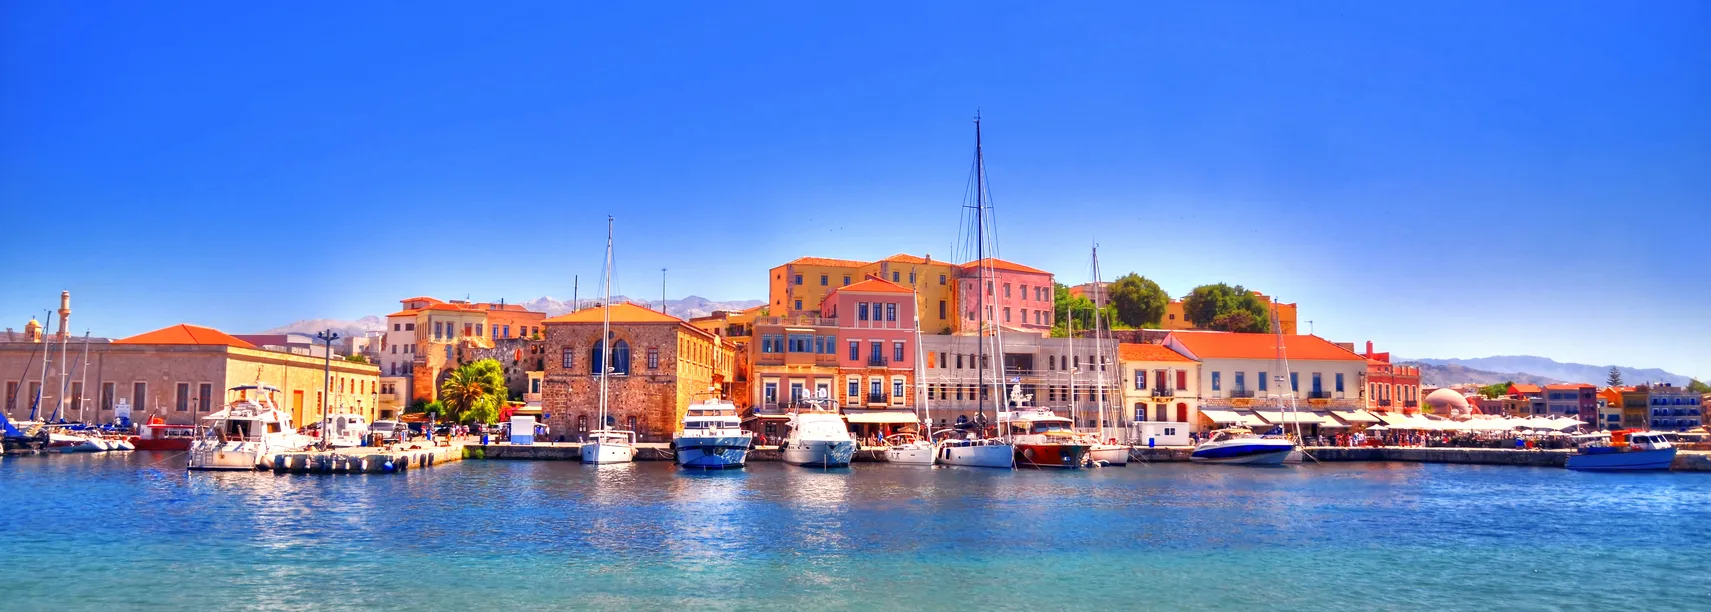 La Canée (Hania), île de Crète © iStock / Danor_a